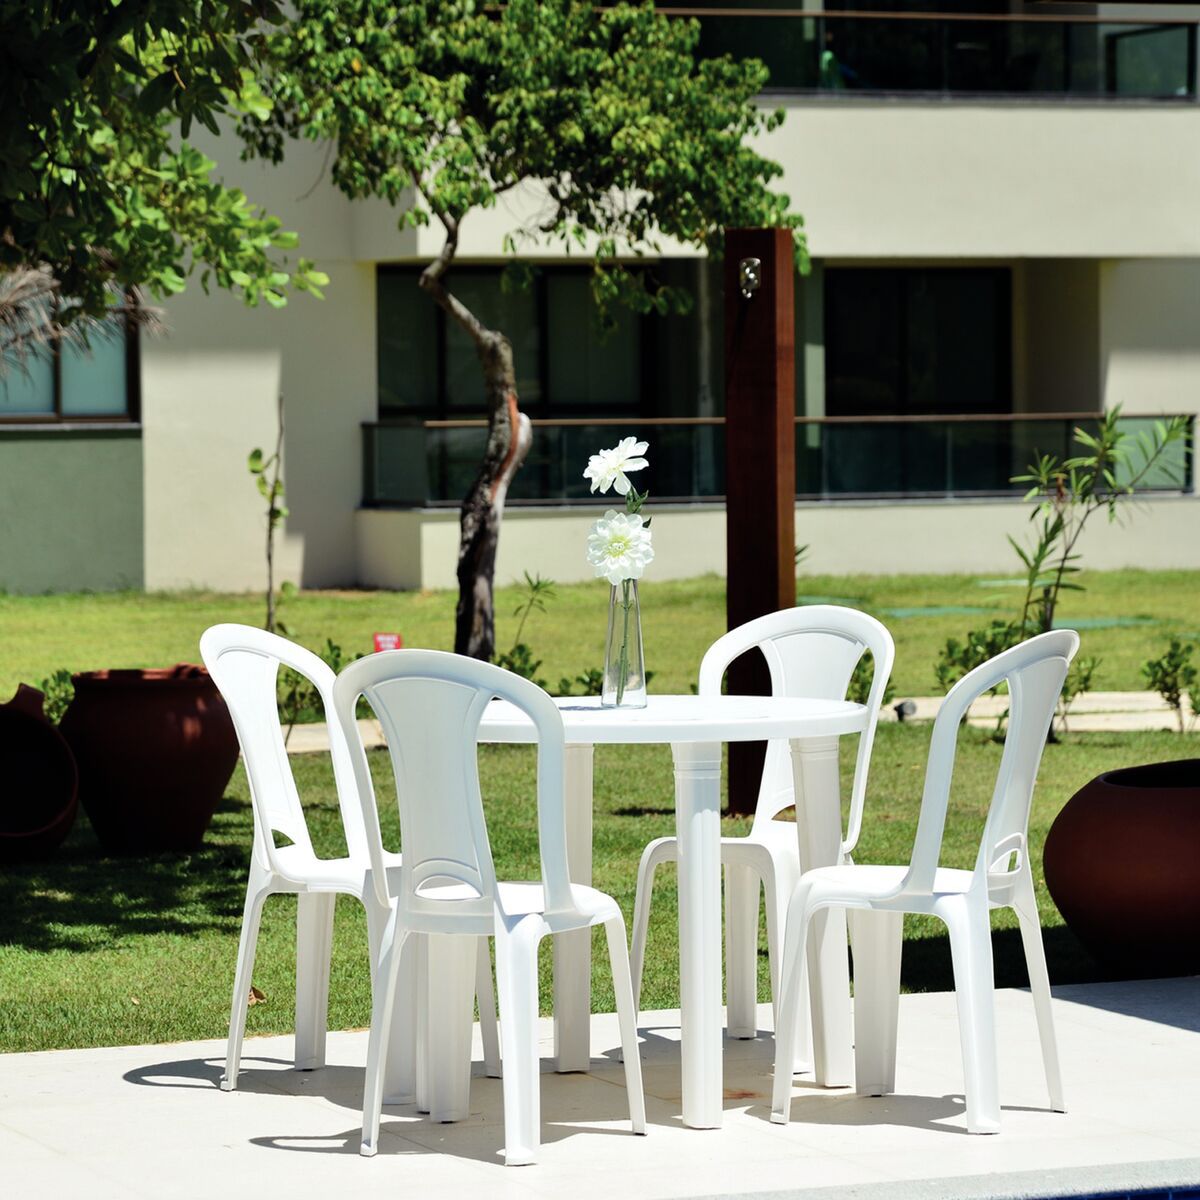 Conjunto de Mesa e Cadeiras Tramontina Plástico